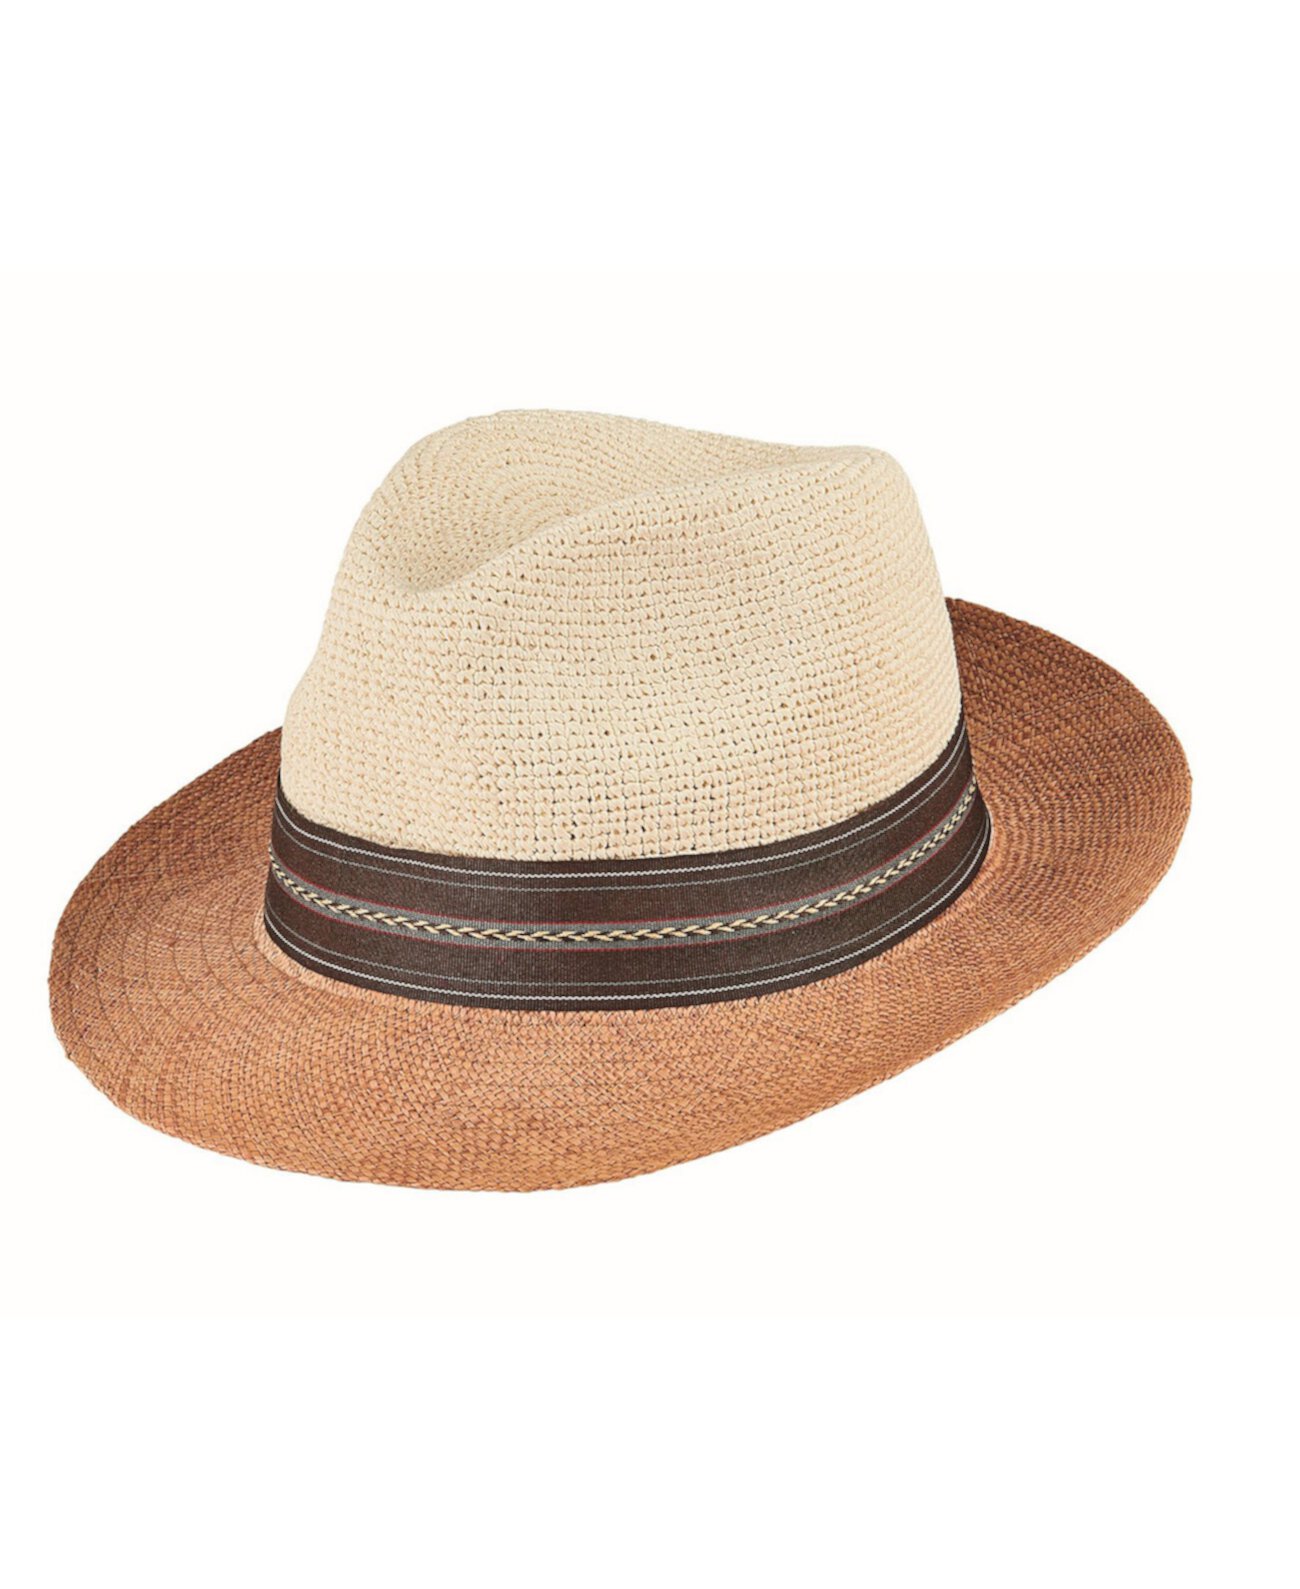 Мужская соломенная шляпа Fedora с вырезом и сшиванием San Diego Hat Company